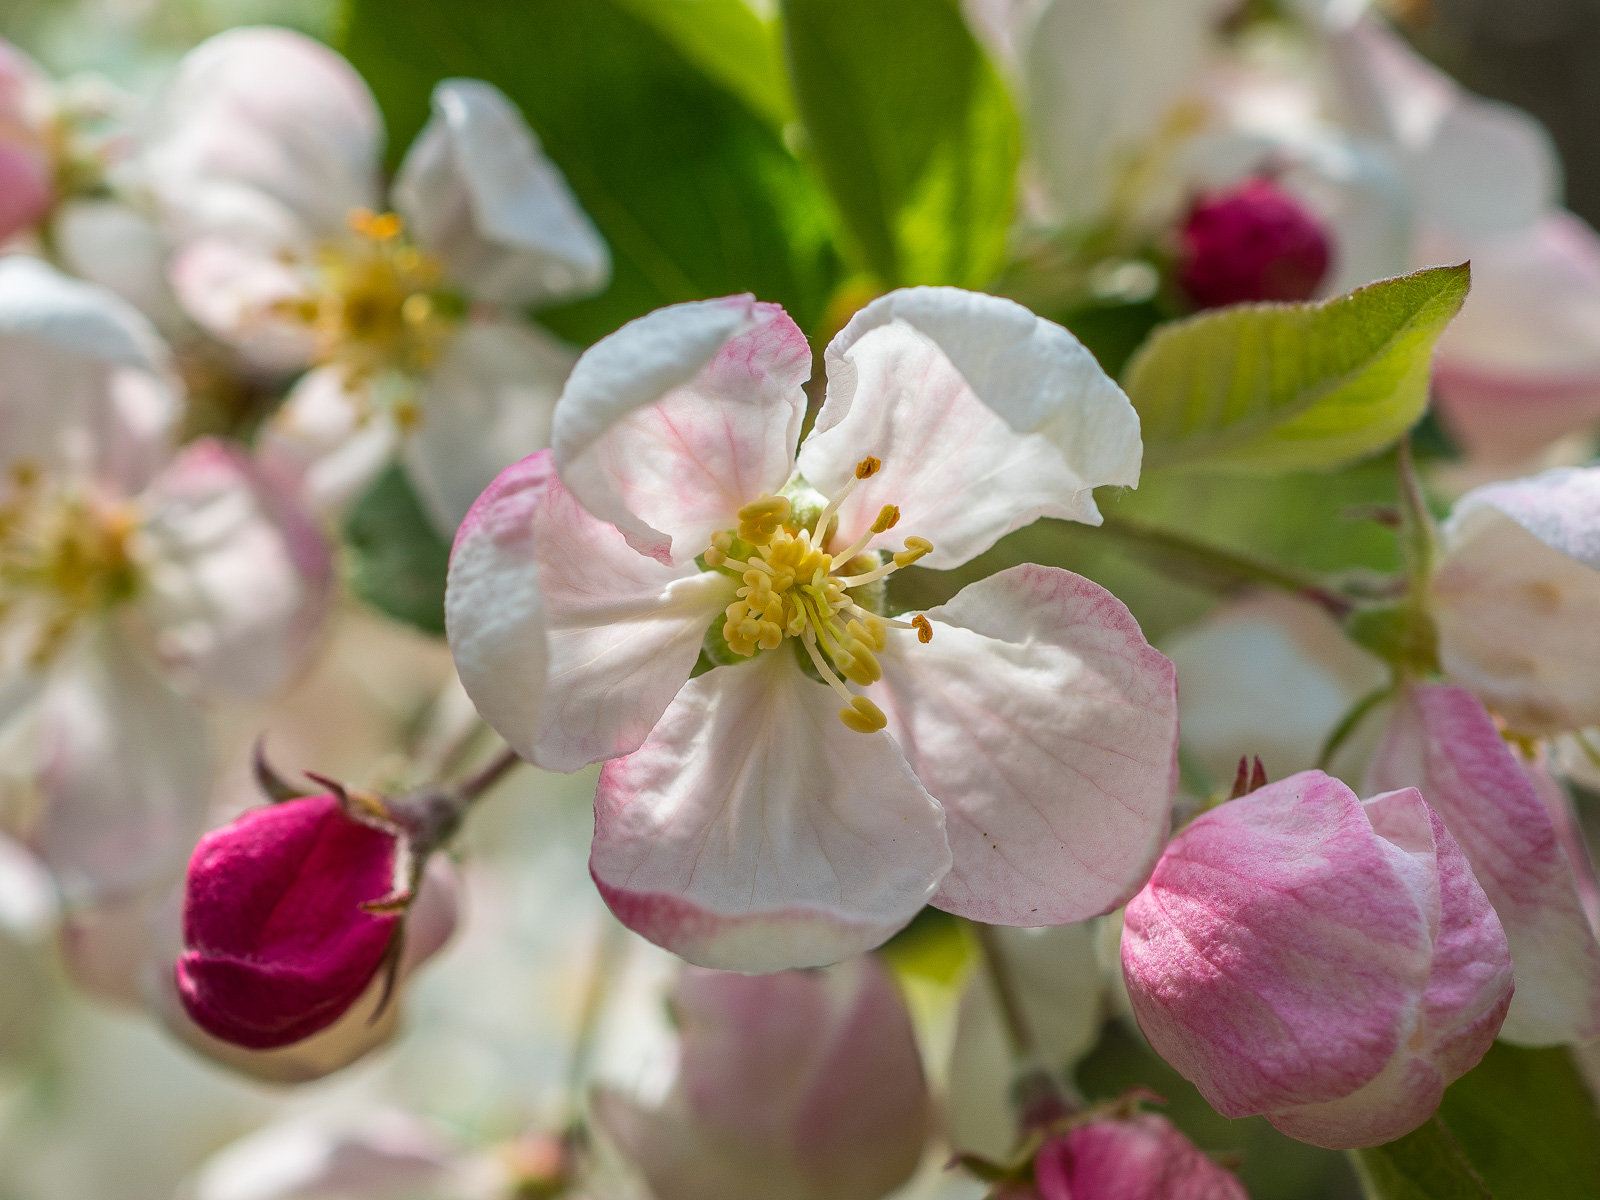 Weiße Blüte eines Zierapfels, drumherum rosa bis rote noch geschlossene Knospen